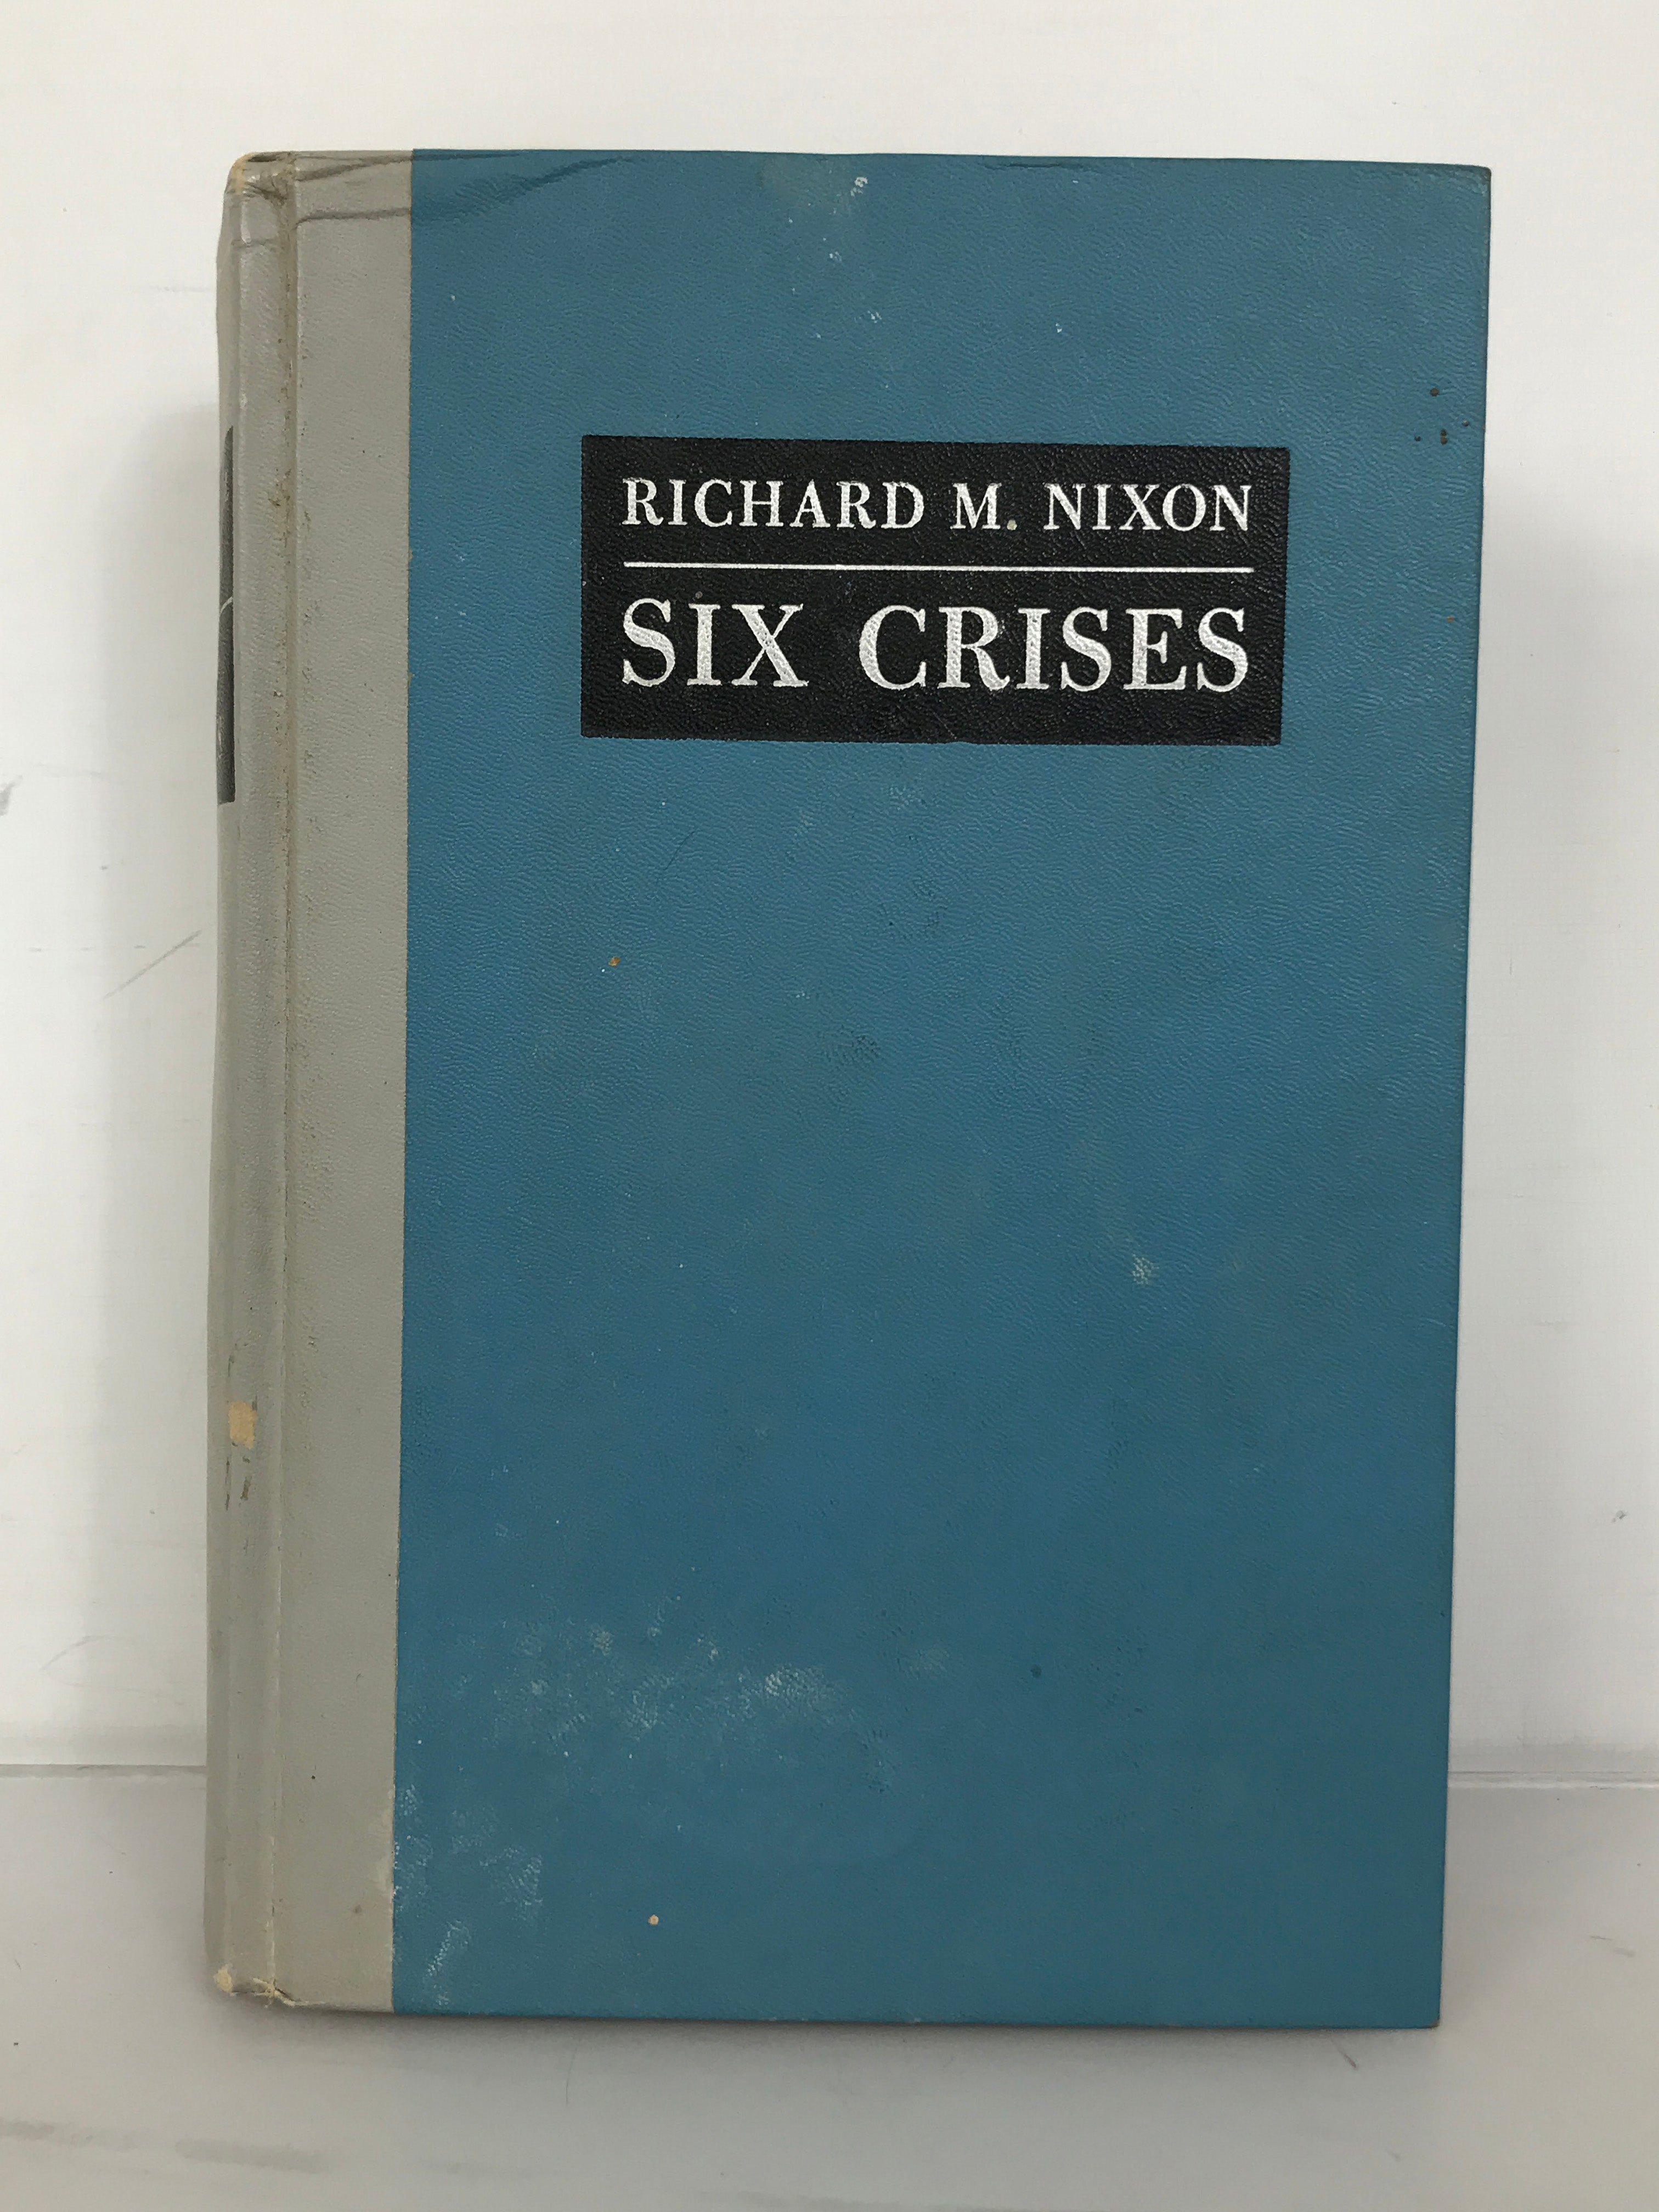 Richard M. Nixon Six Crises 1962 HC